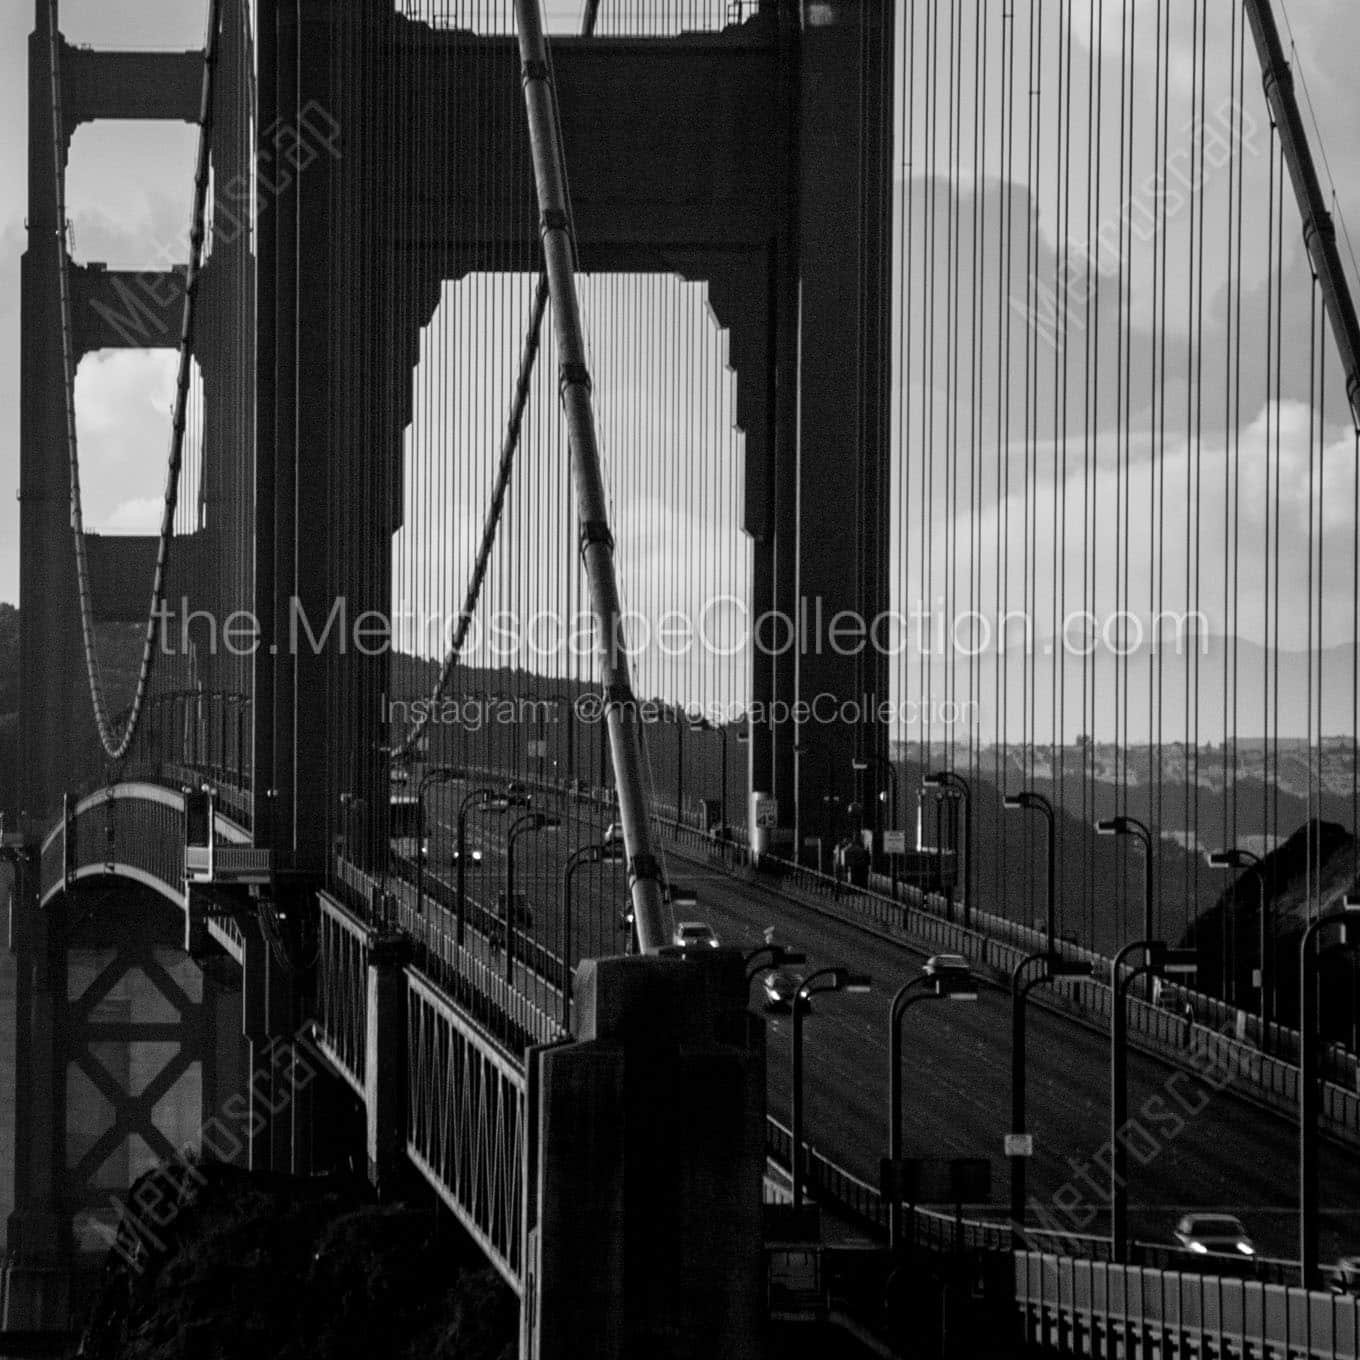 us 101 crosses golden gate bridge Black & White Office Art